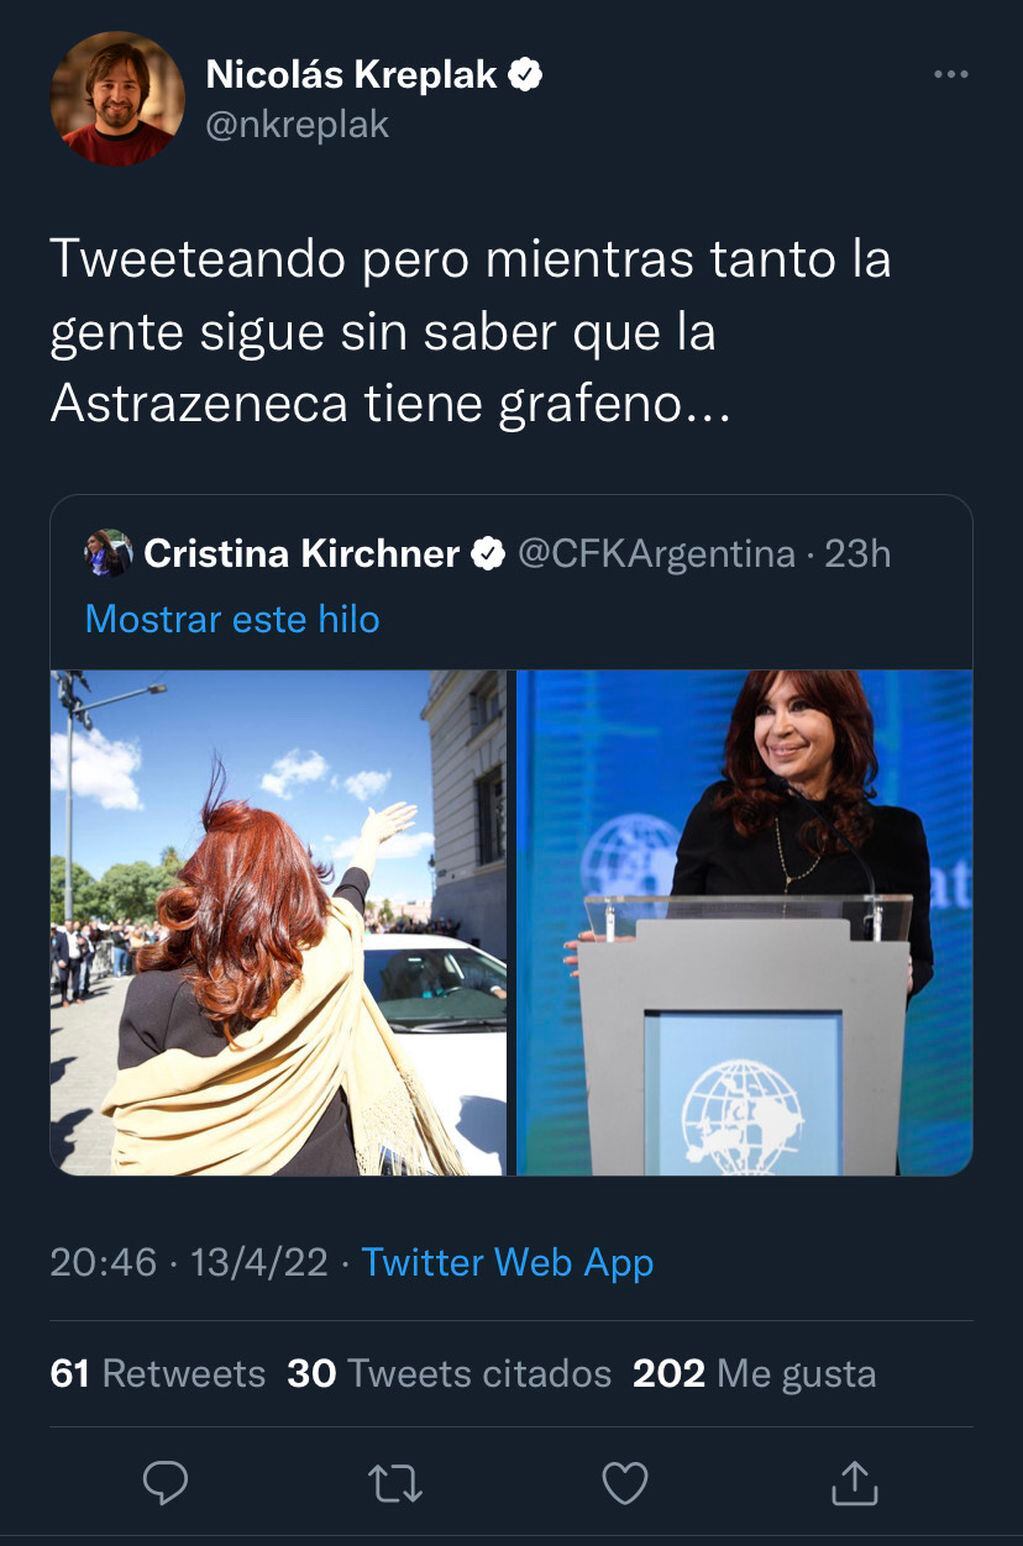 El tweet contra Cristina Kirchner.